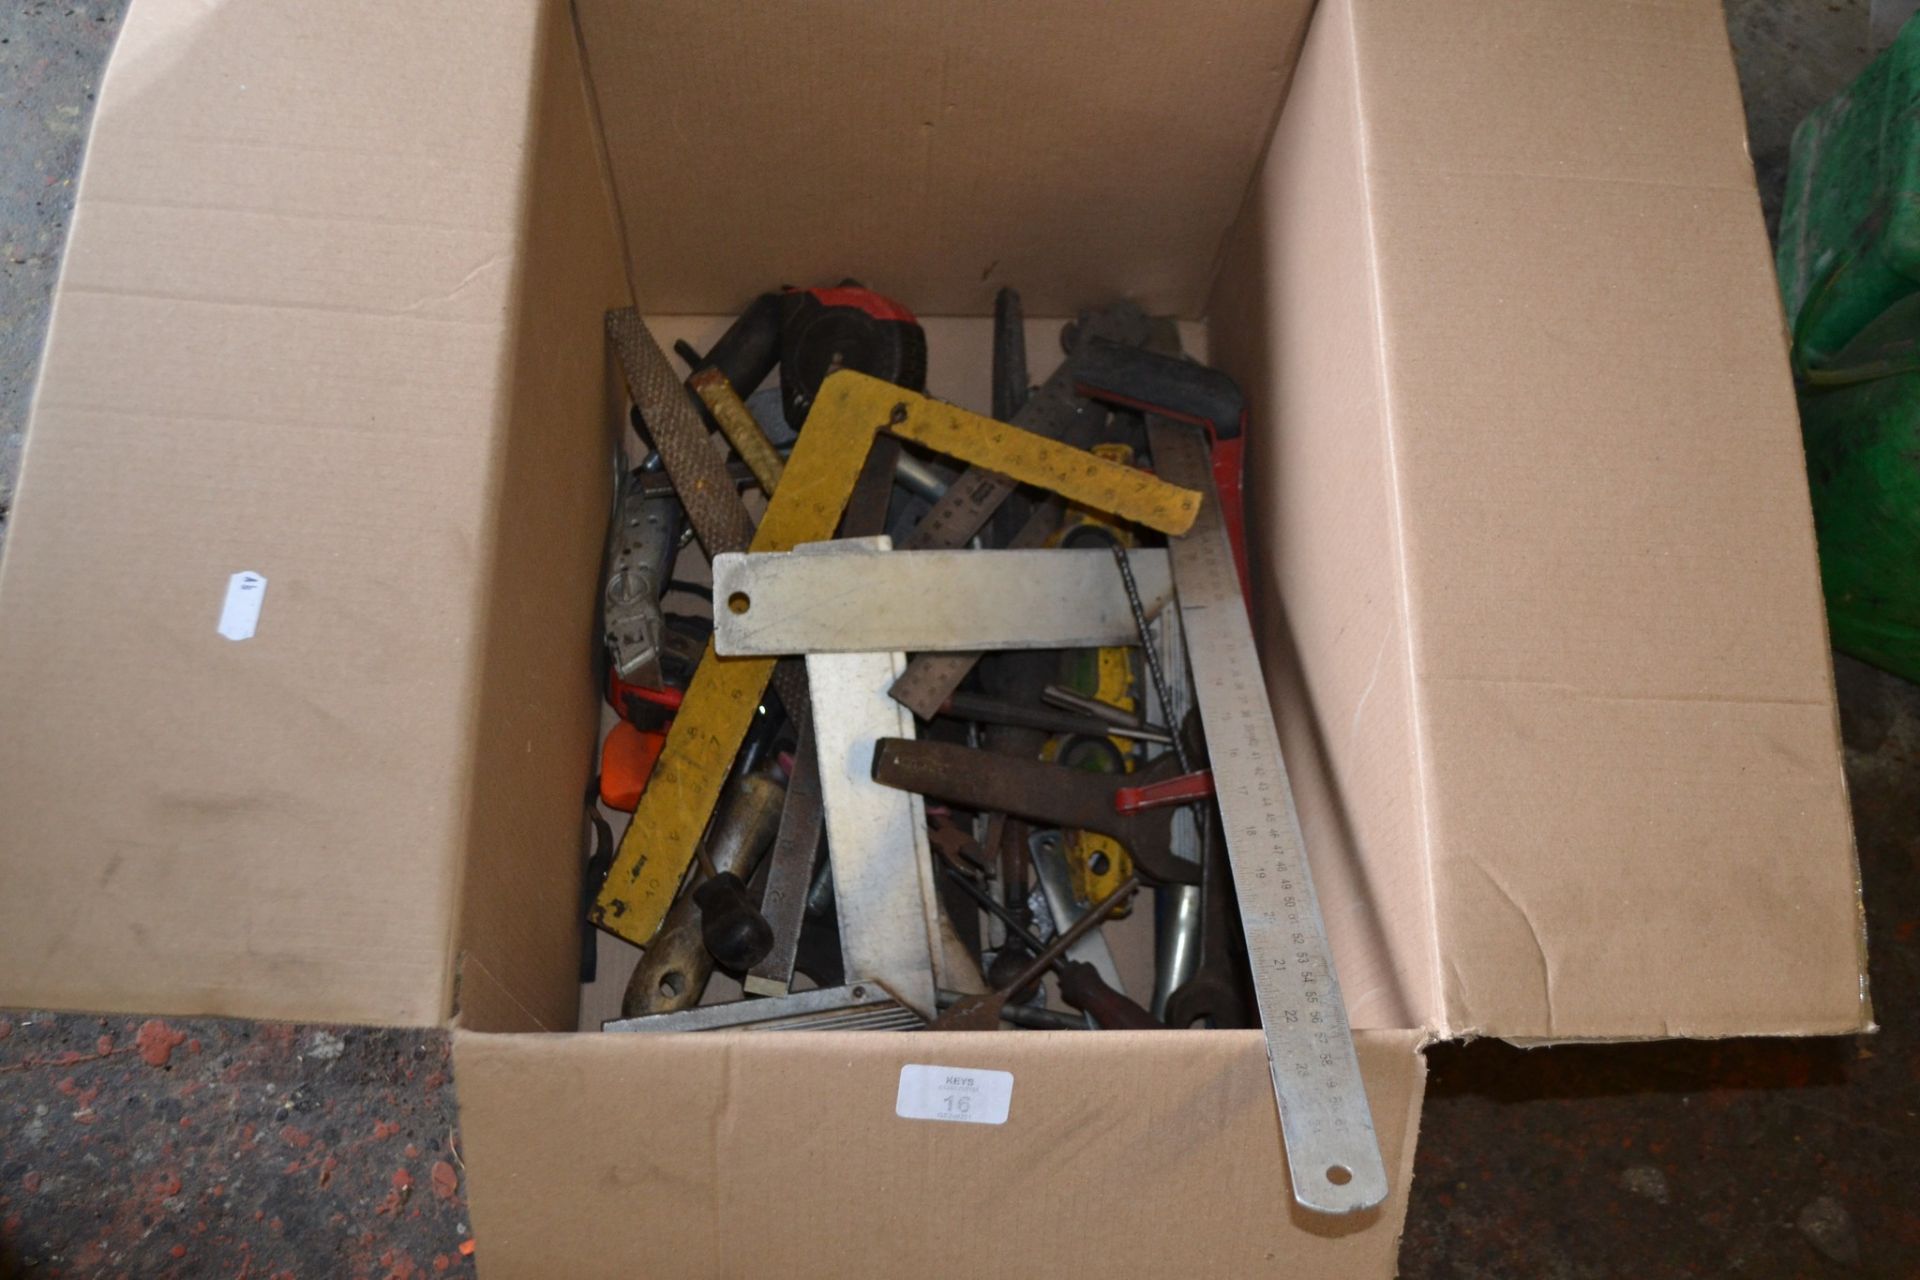 Box of mixed tools